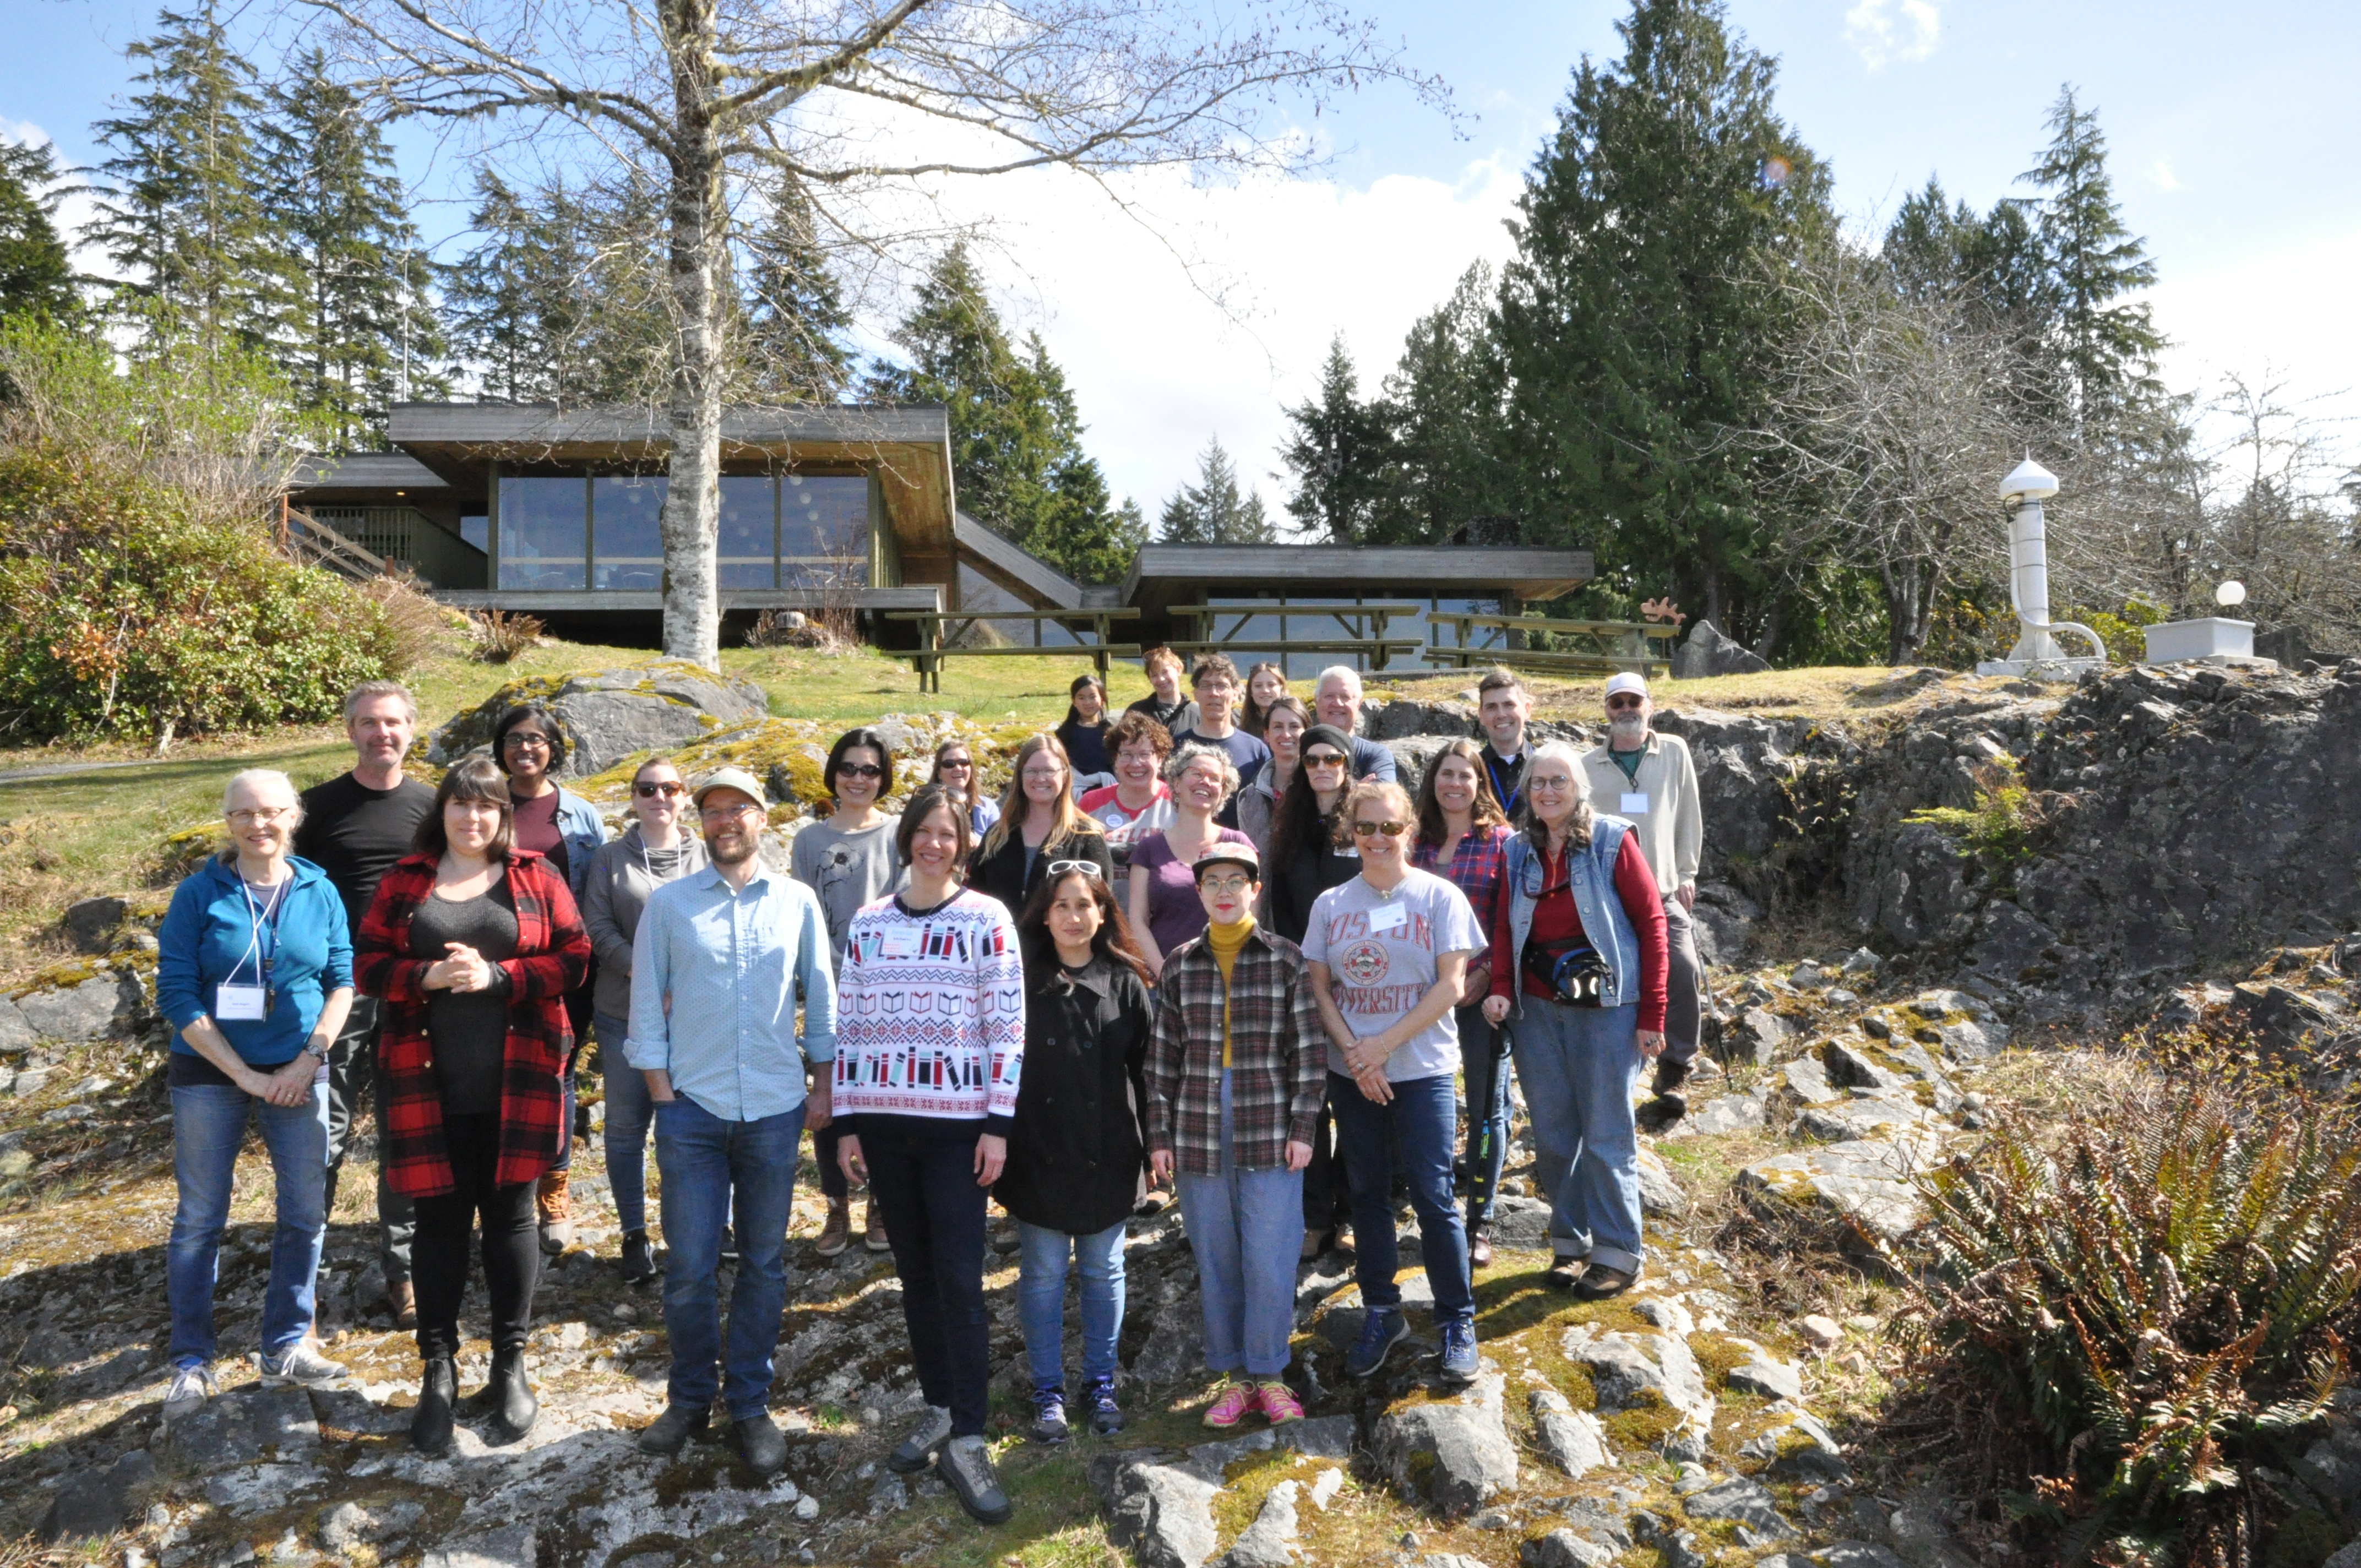 Group photo at 2019 Cyamus Annual Meeting in Bamfield, British Columbia